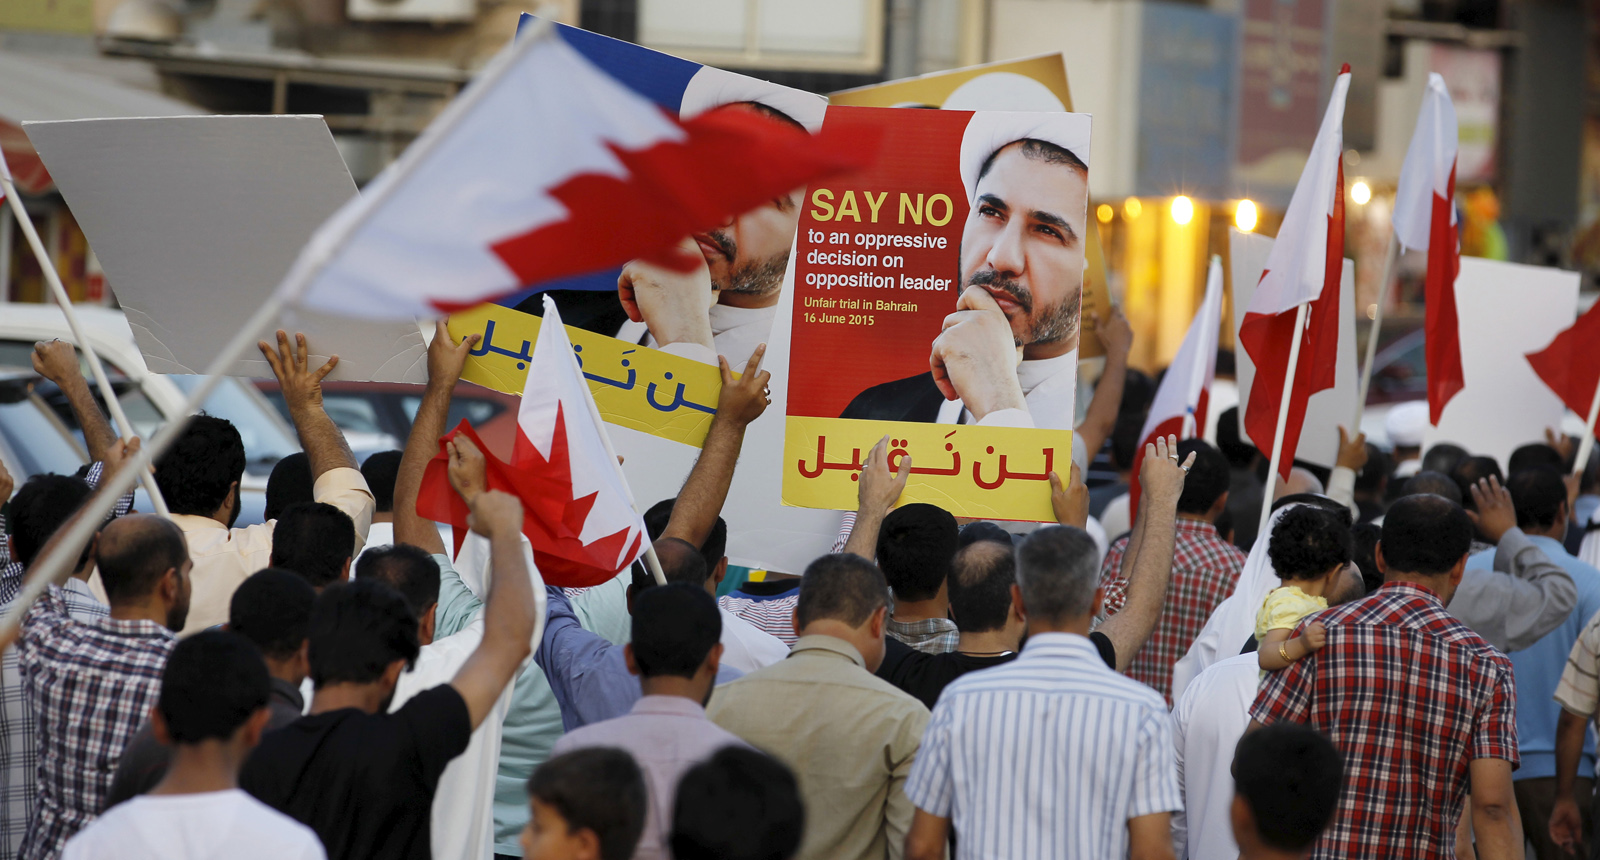 Bürger aus Bahrein demonstrieren gegen die Regierung.